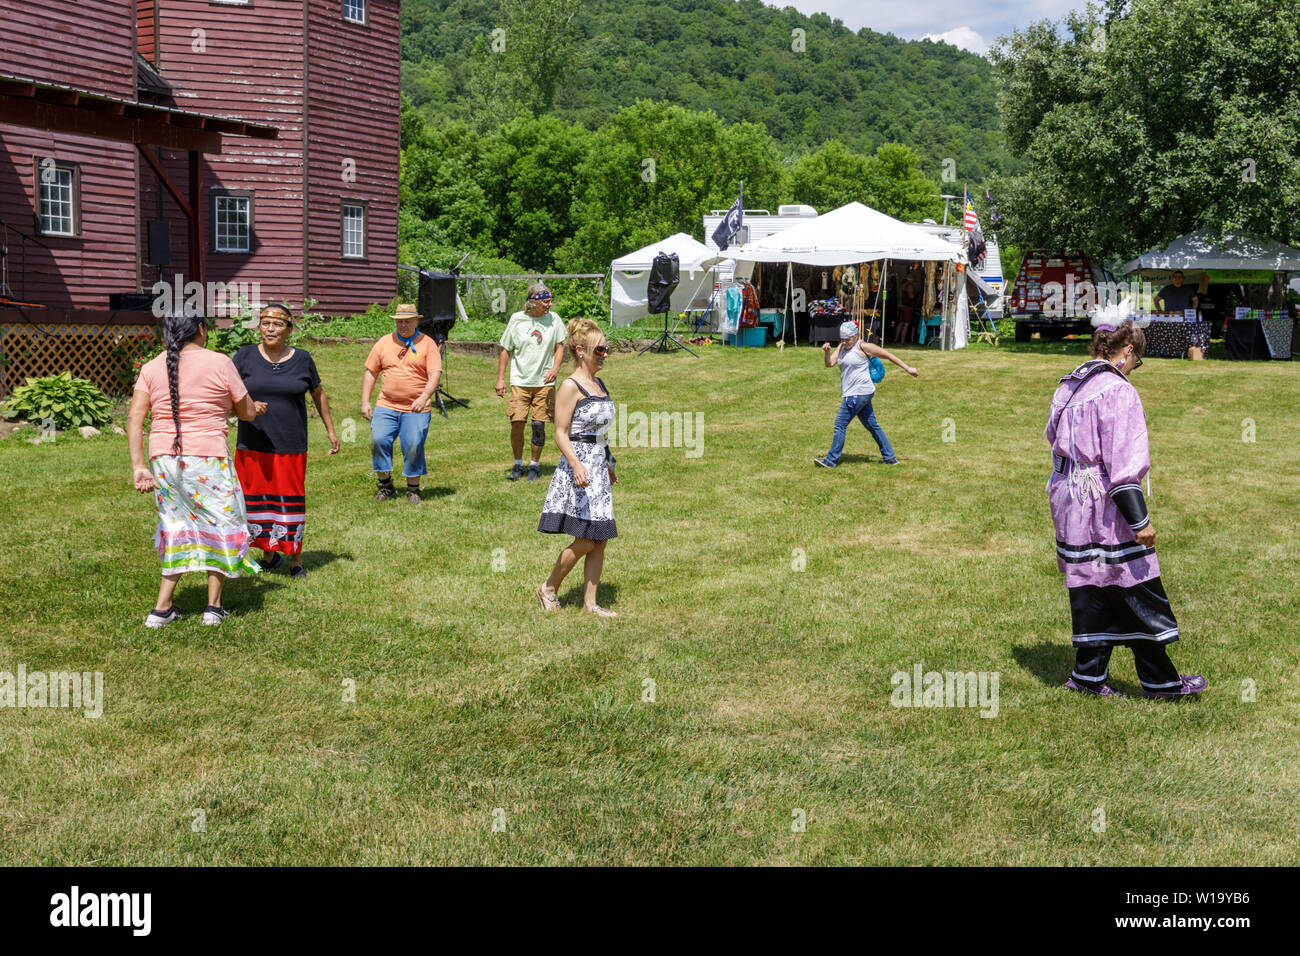 La danse sociale, Iroquois Festival, Fonda, New York State, USA Banque D'Images